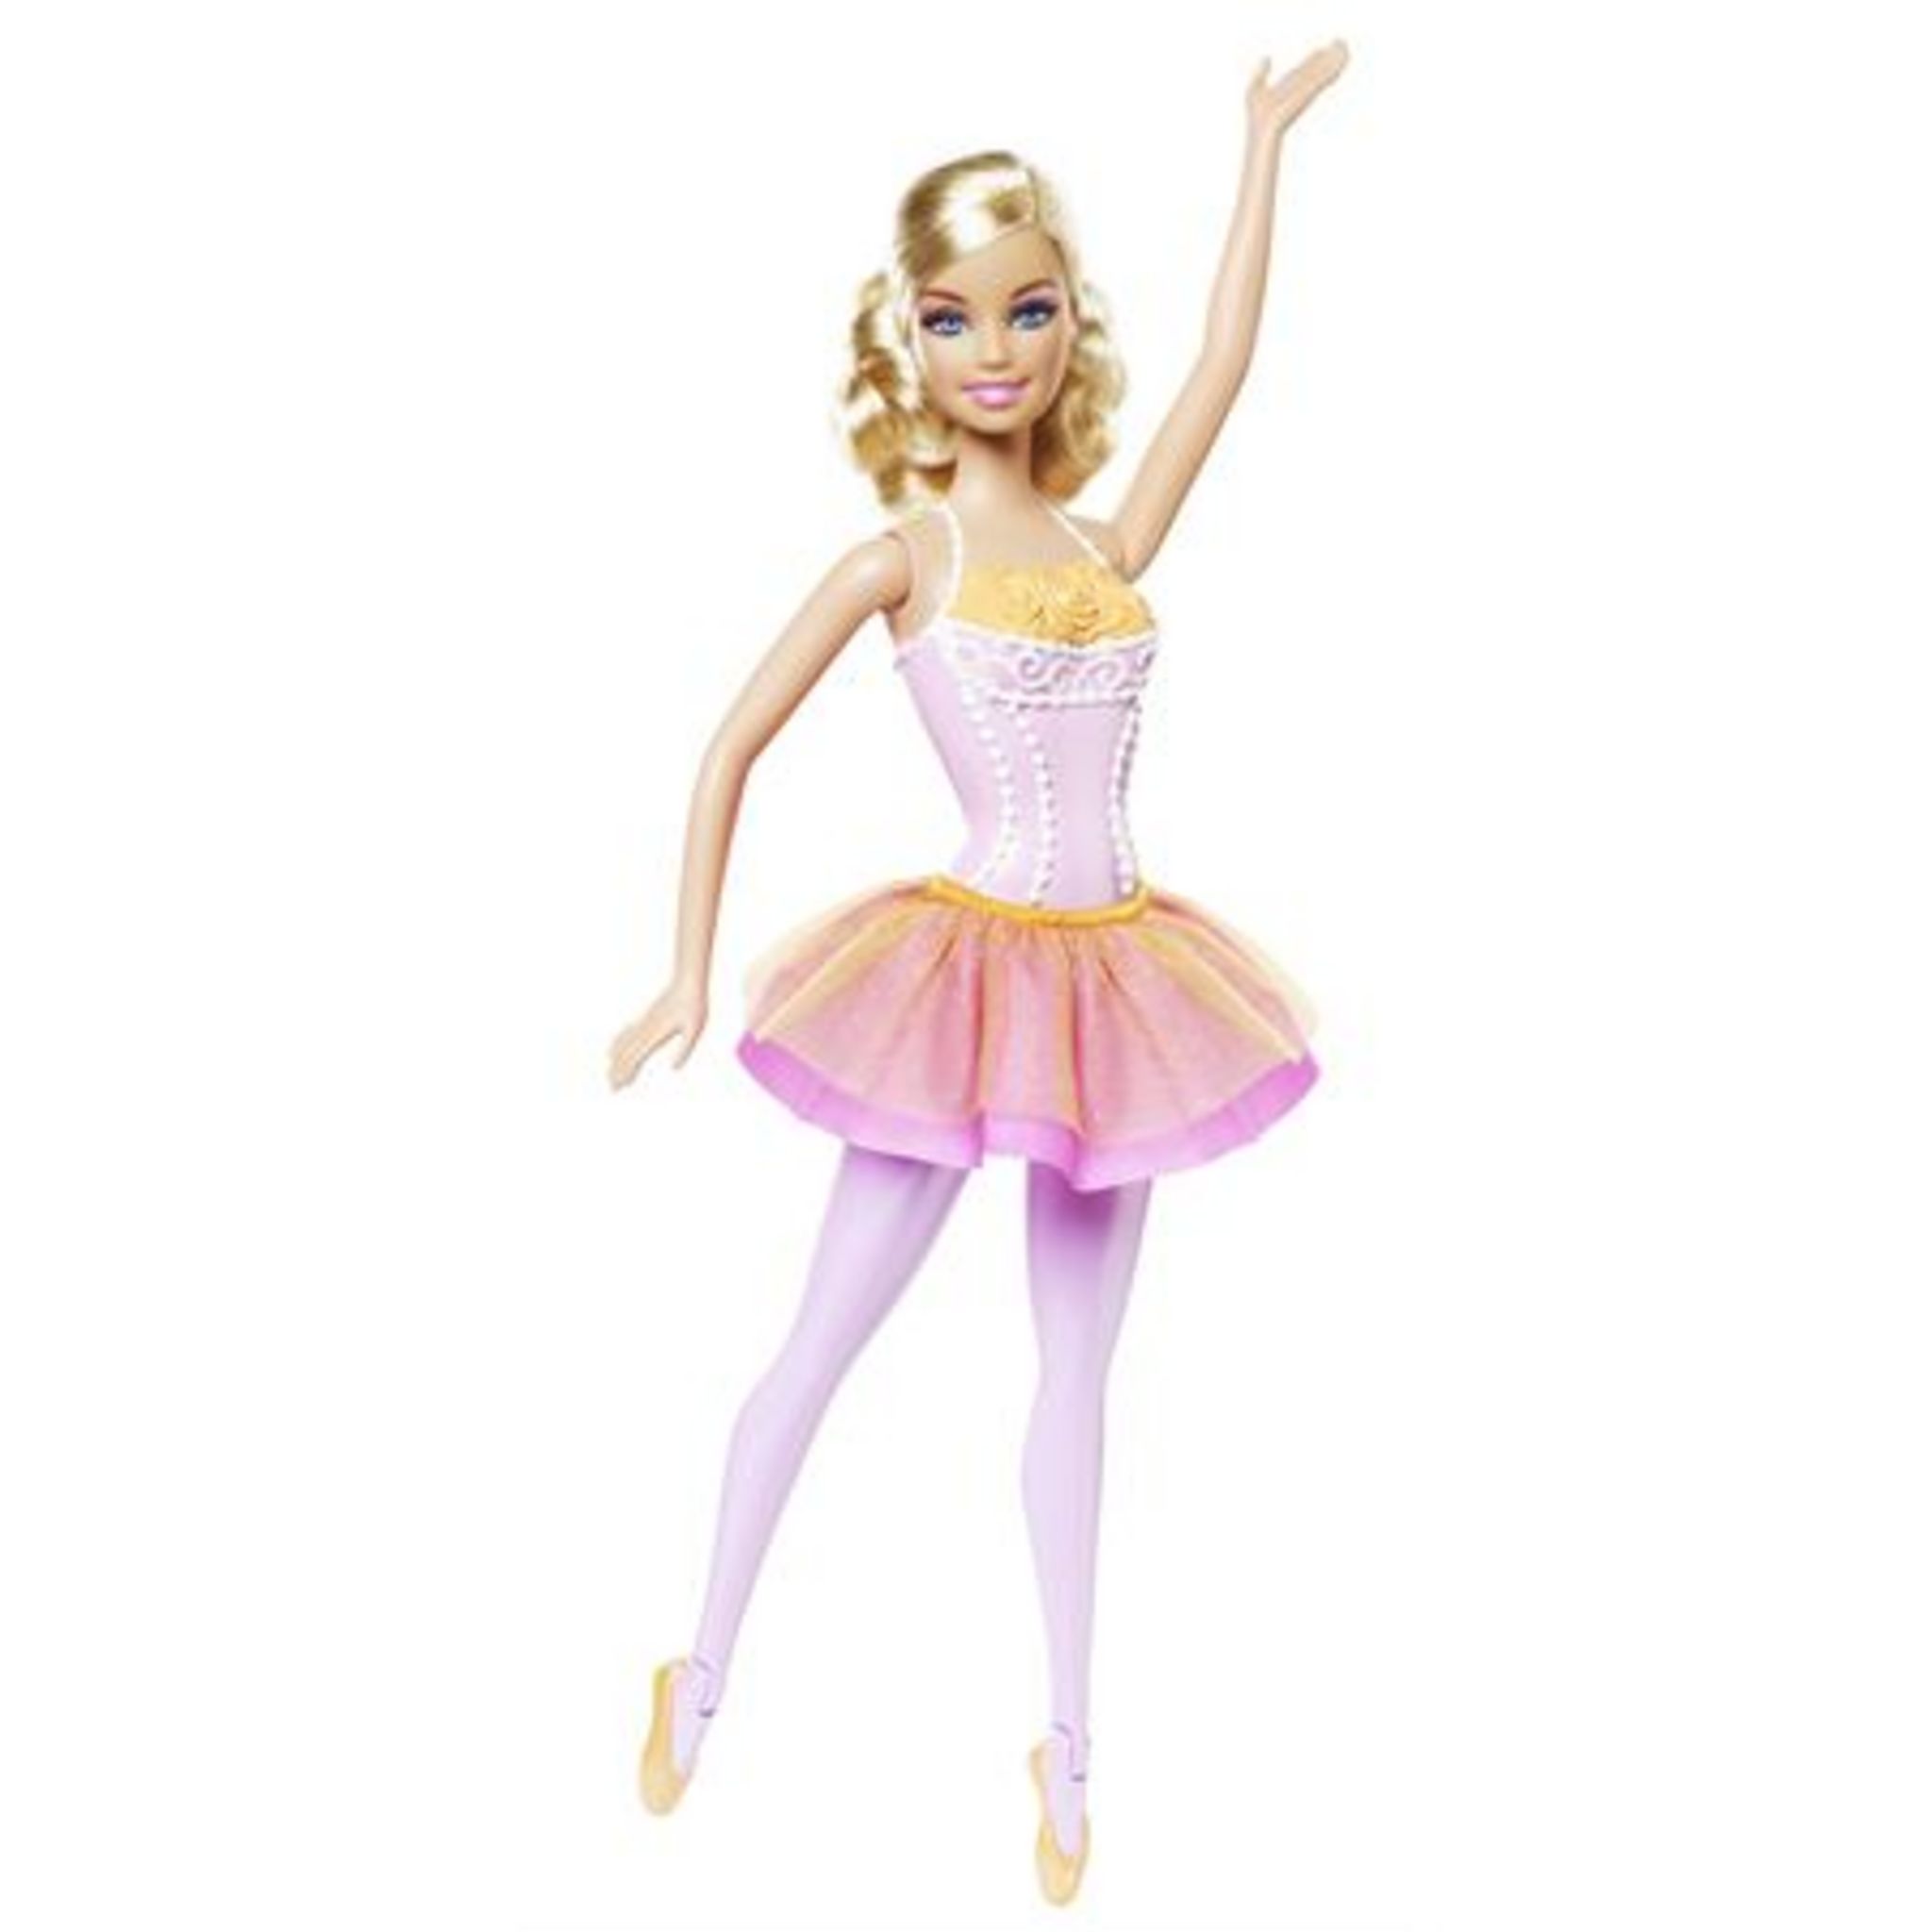 Barbie ballerine poupée danseuse aux cheveux blonds, Avec tutu